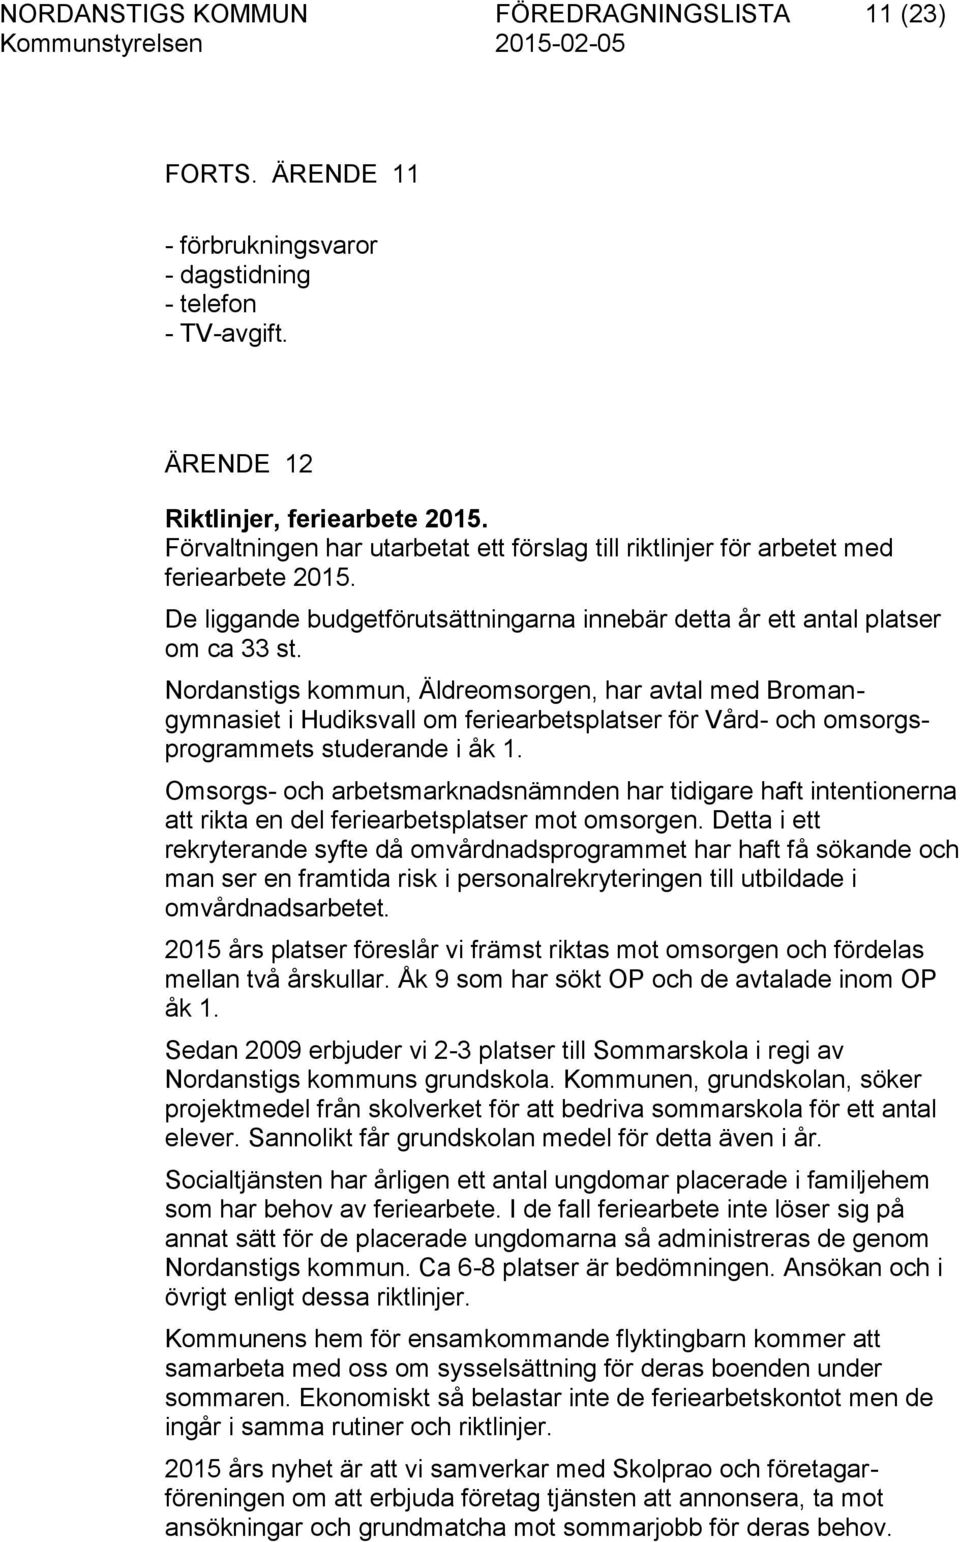 Nordanstigs kommun, Äldreomsorgen, har avtal med Bromangymnasiet i Hudiksvall om feriearbetsplatser för Vård- och omsorgsprogrammets studerande i åk 1.